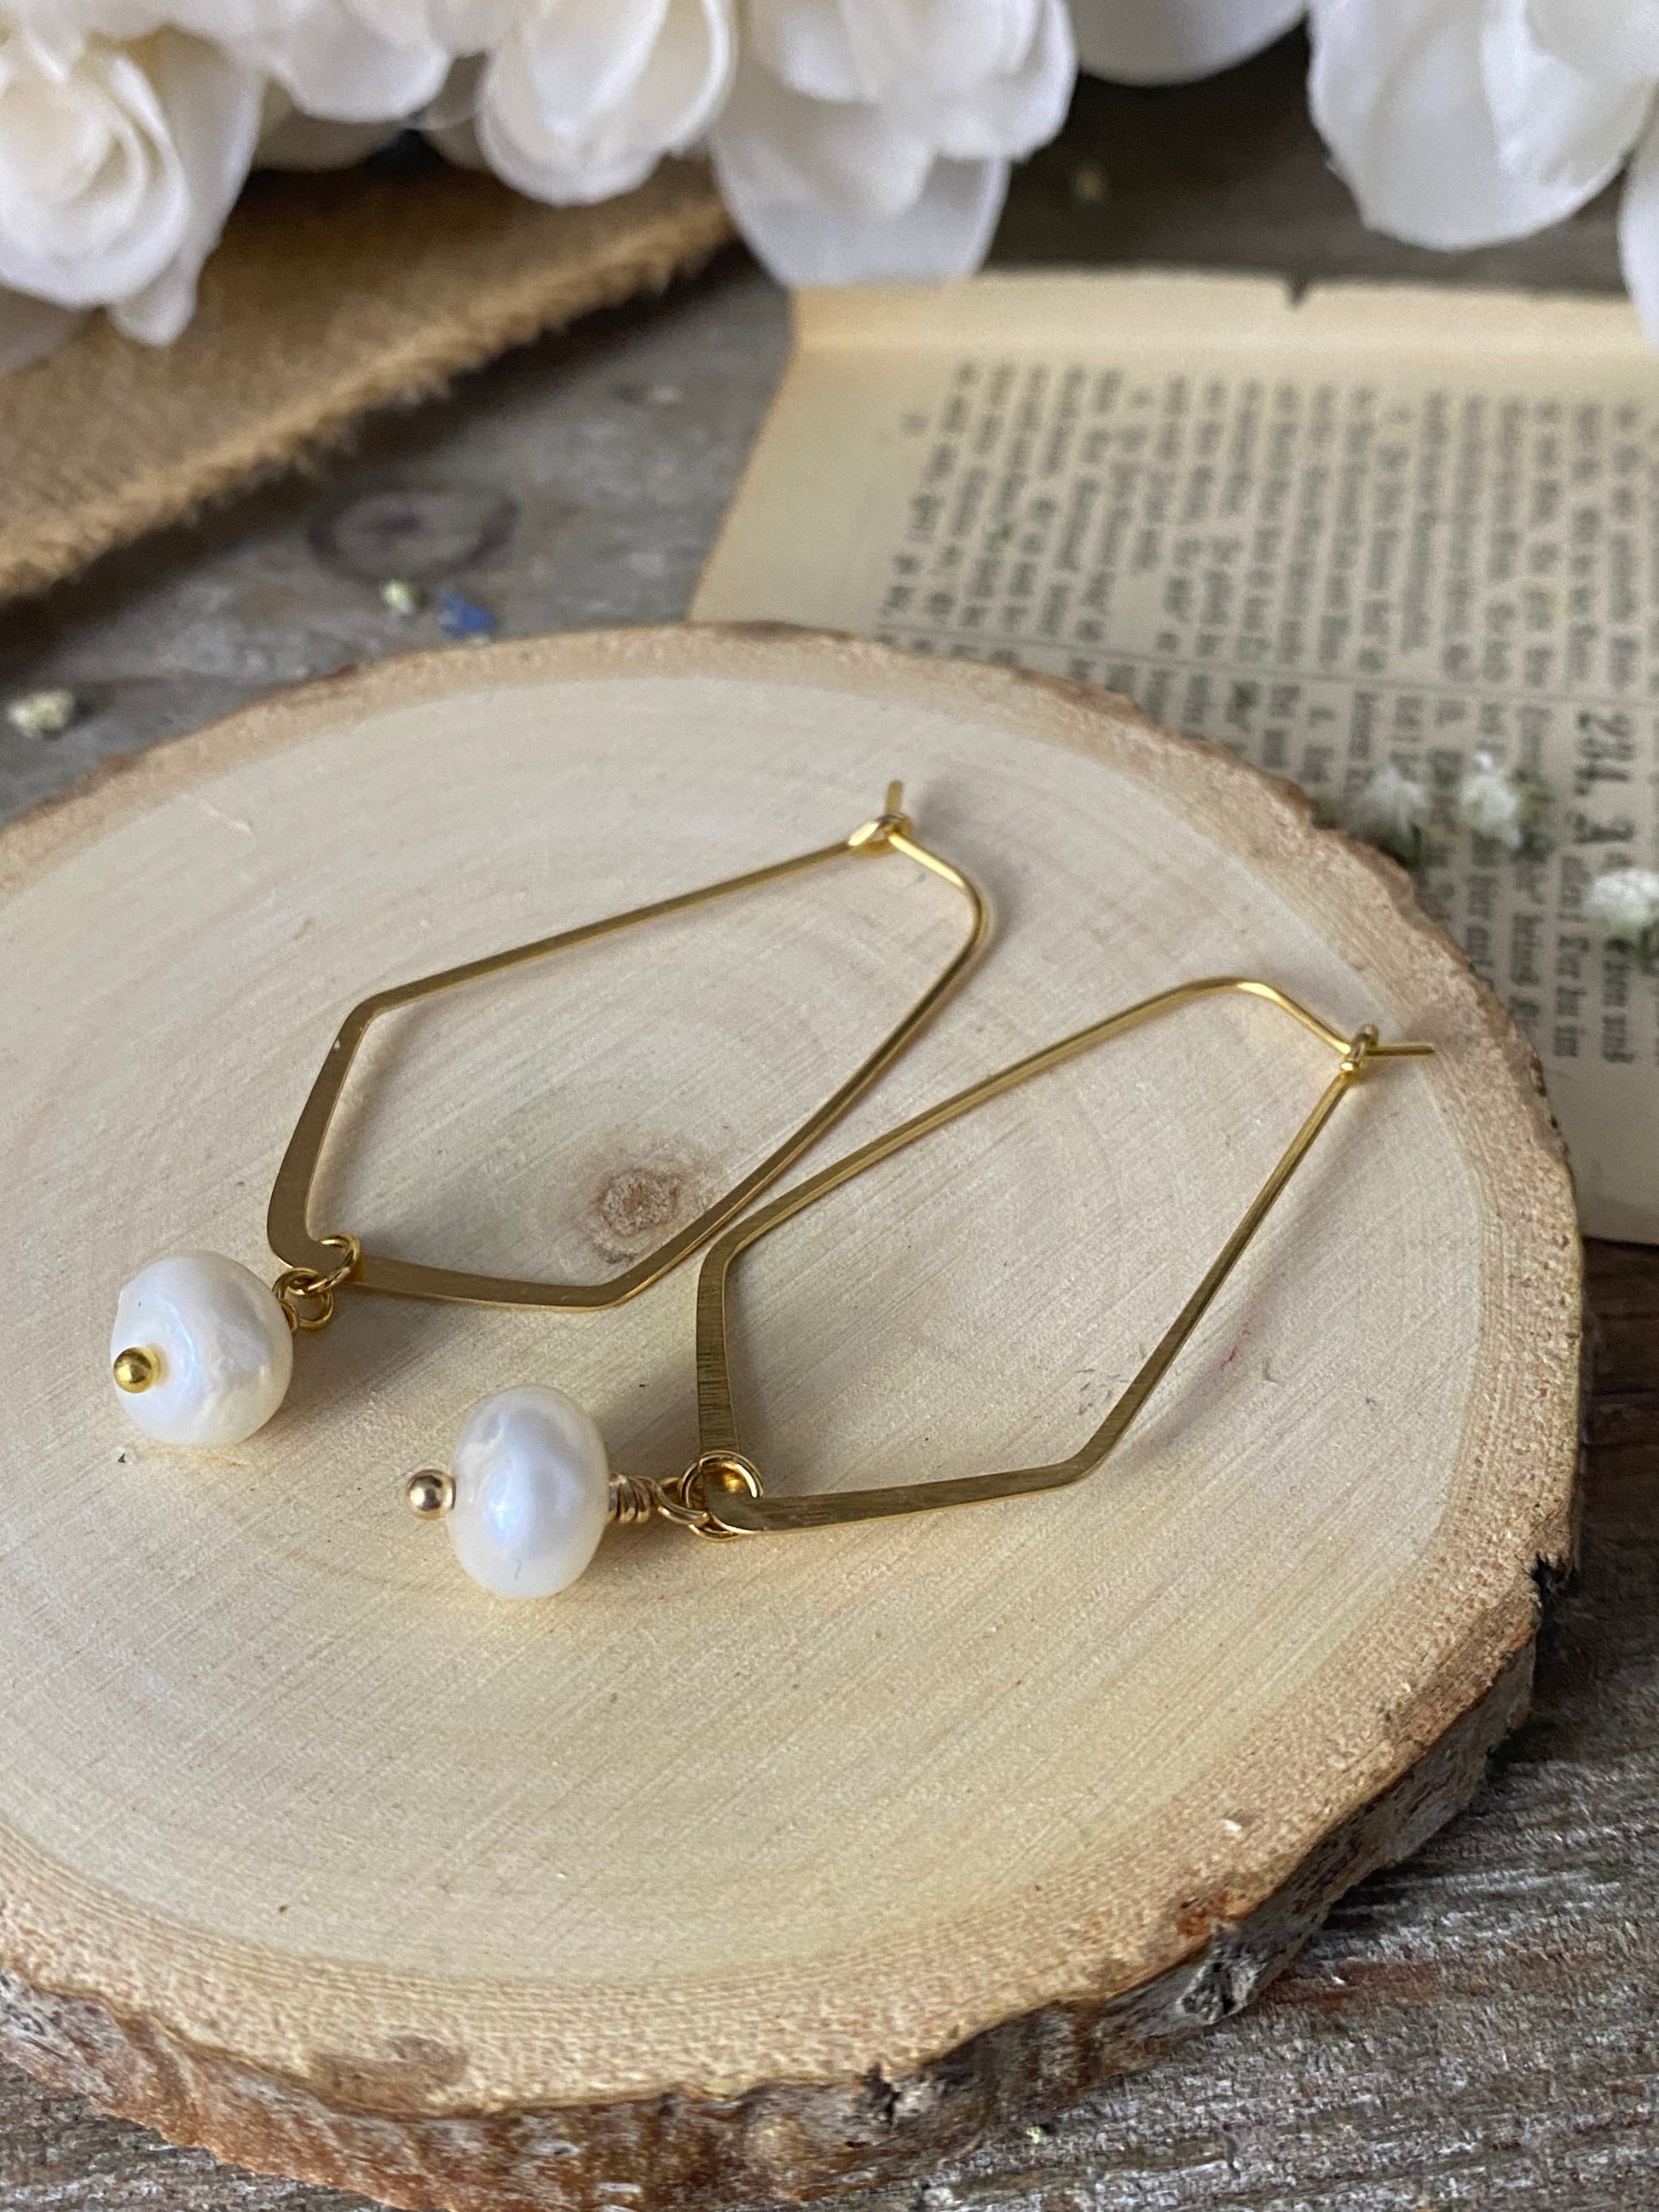 Pearls, 10k gold metal hoop earrings - Andria Bieber Designs 